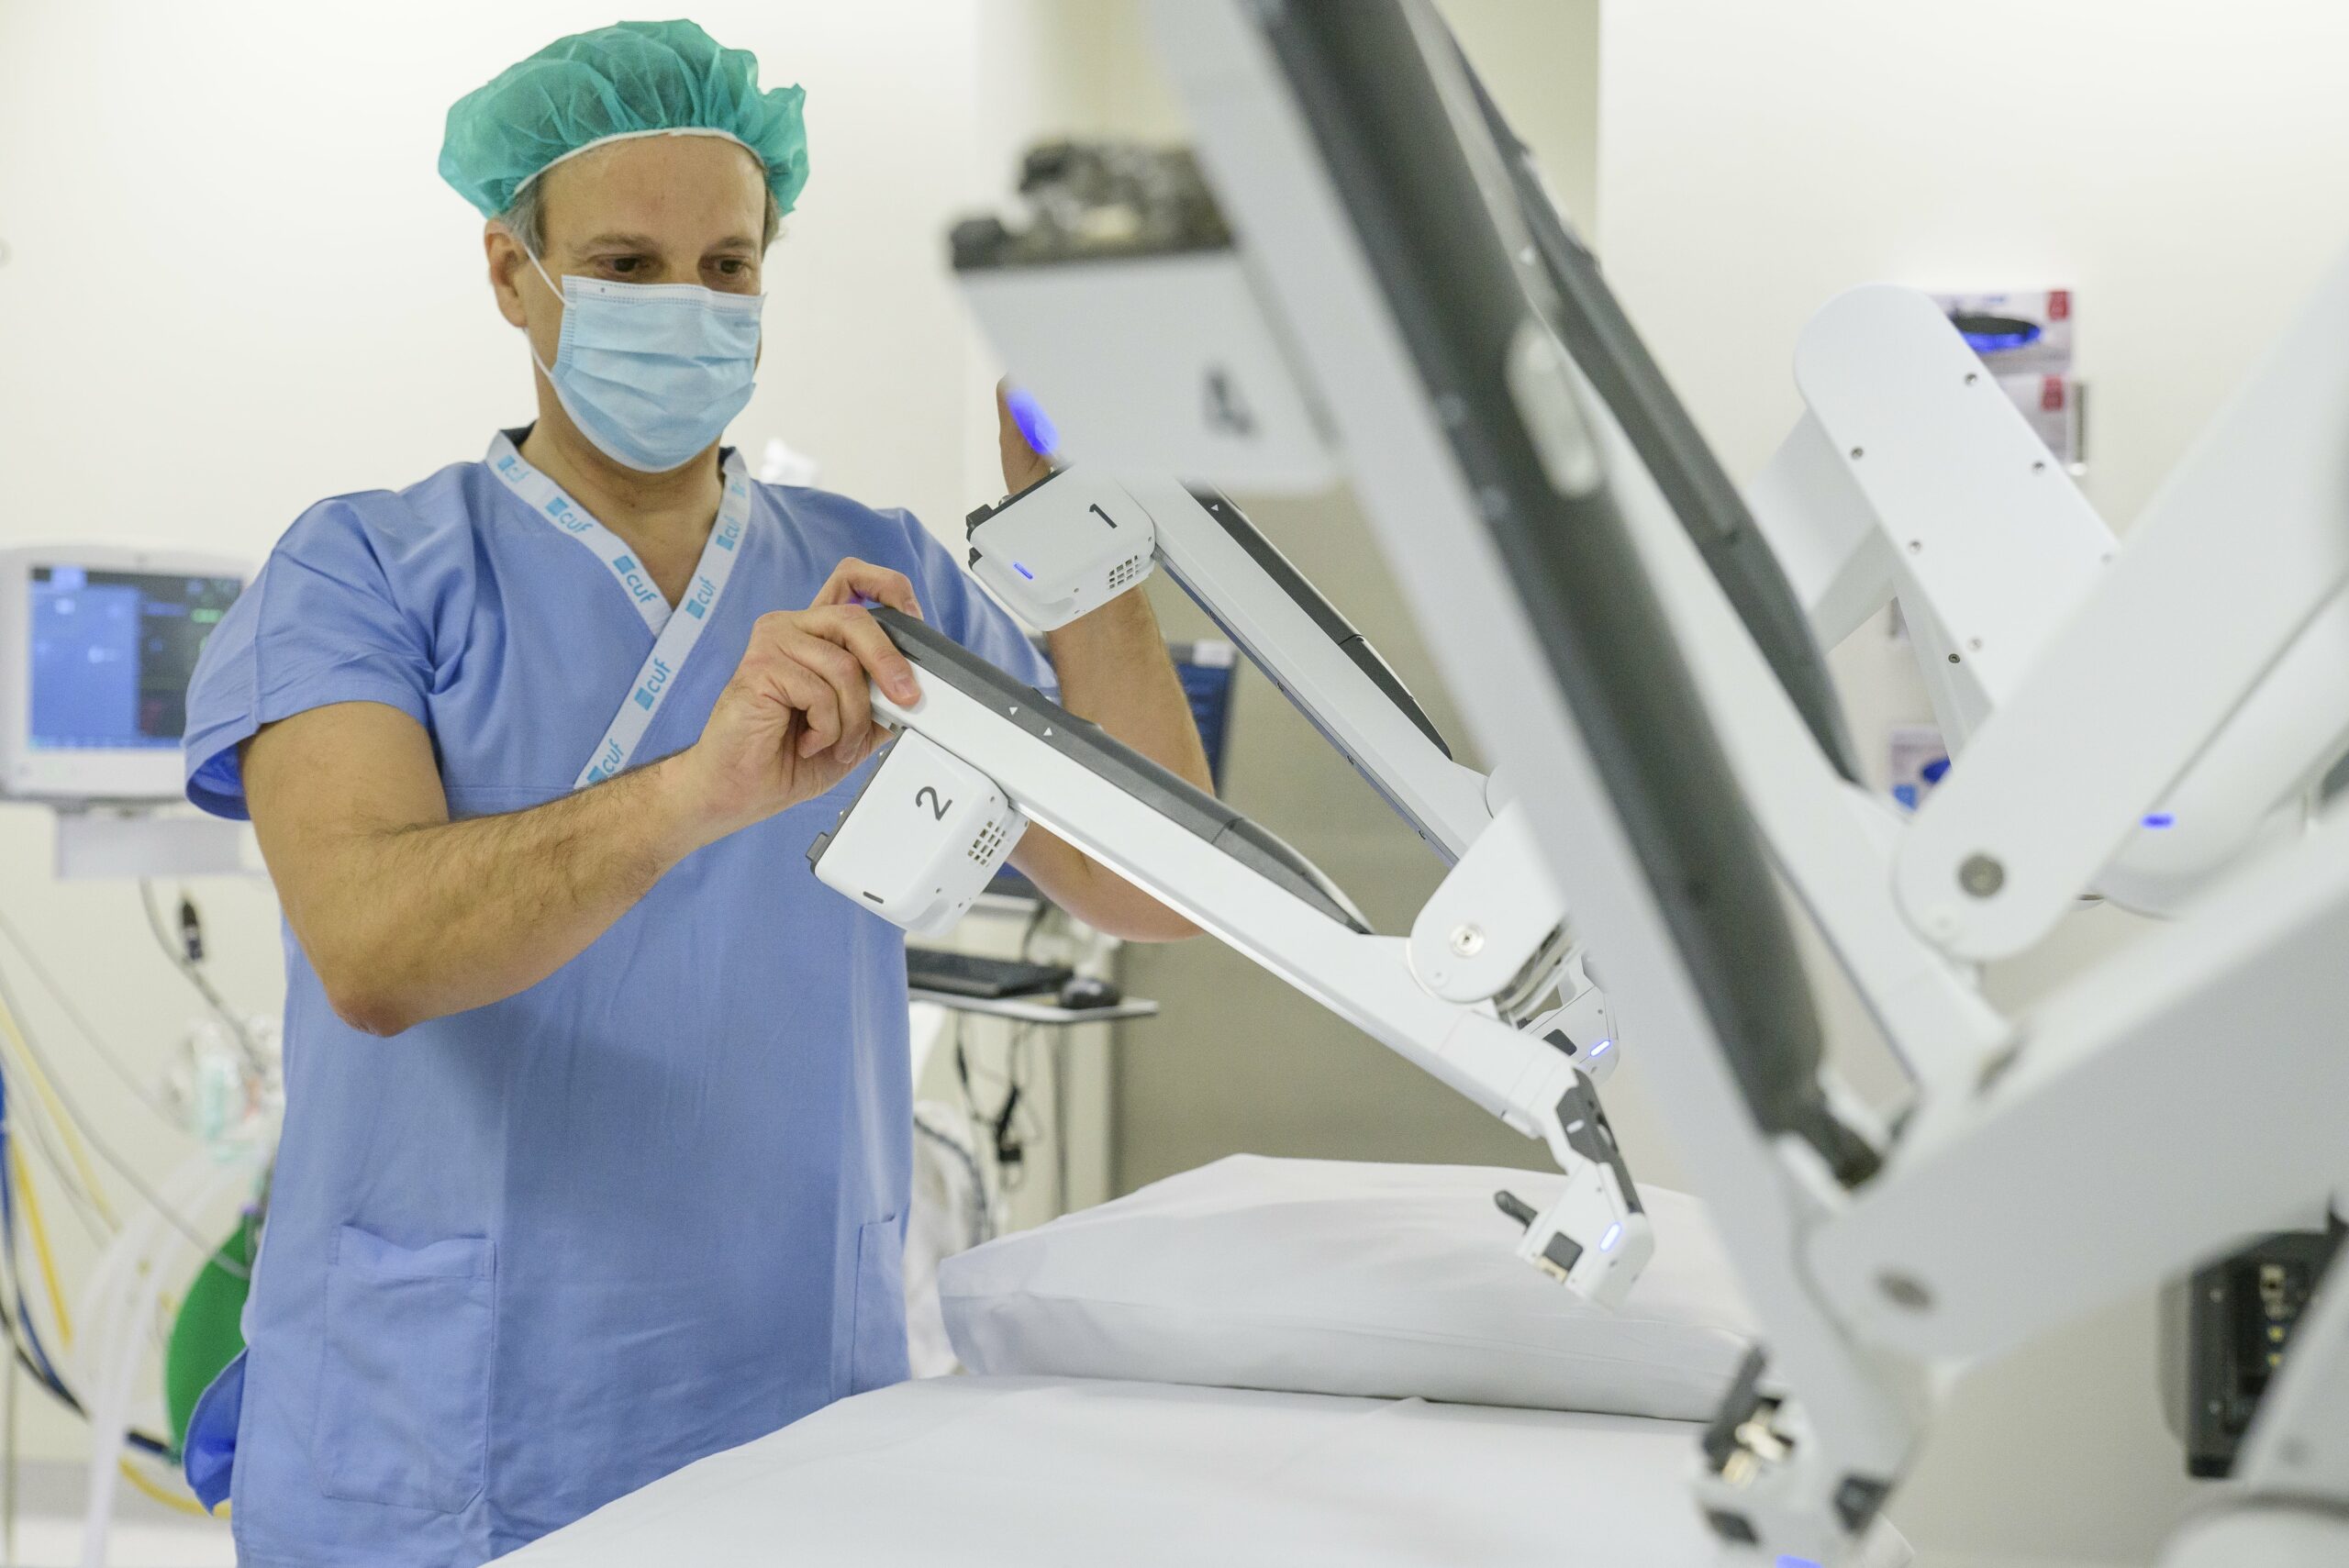 Robot de última geração permite cirurgias com maior precisão, flexibilidade e controlo